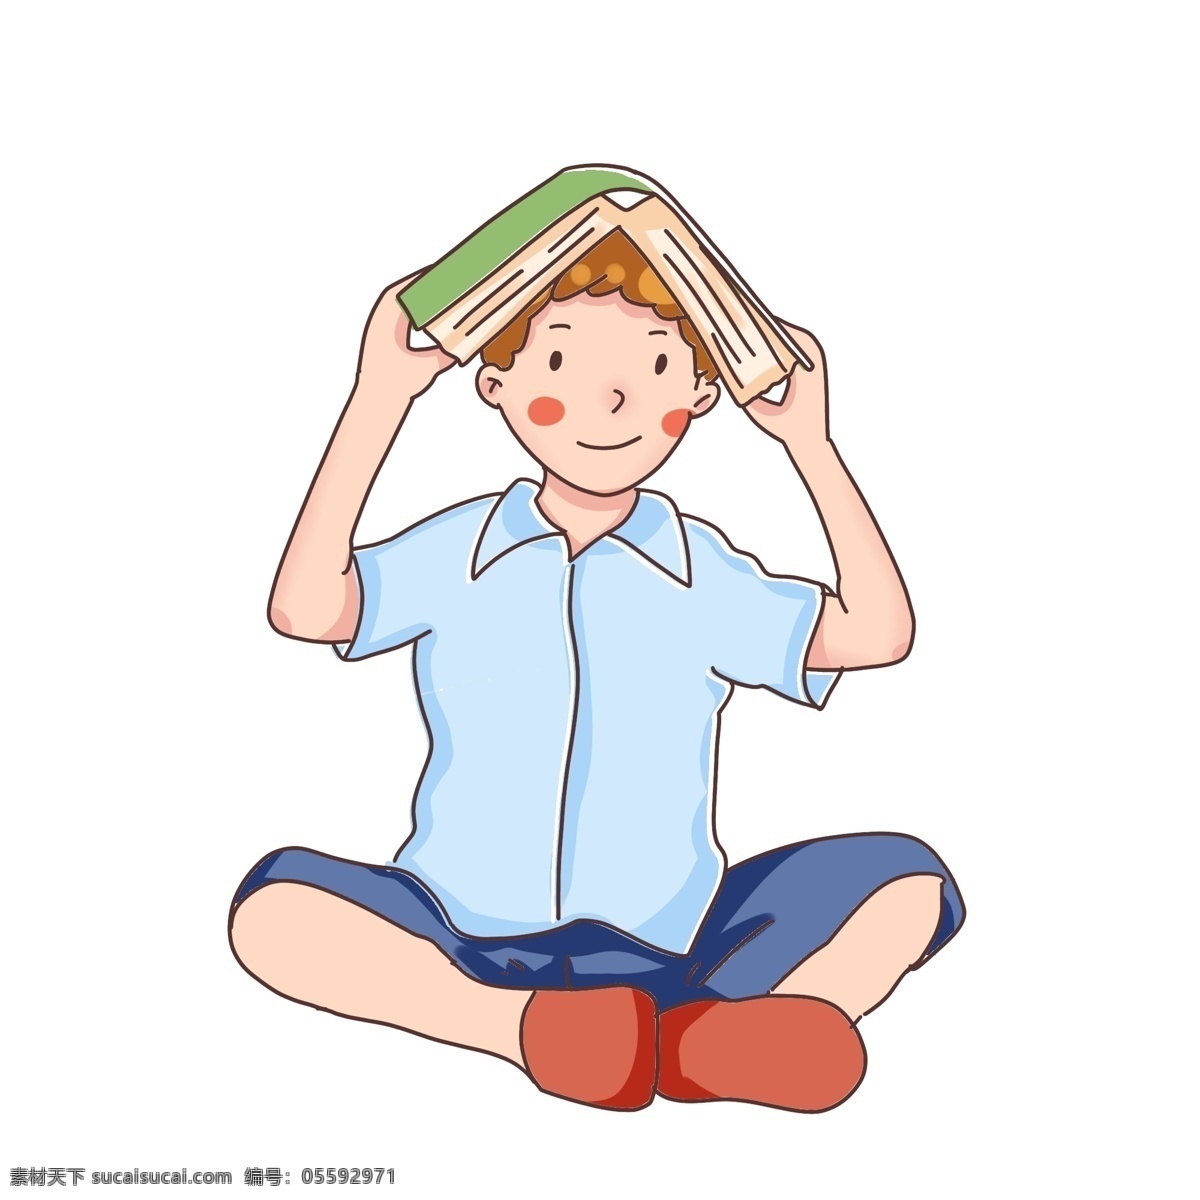 卡通学生 男孩 女孩 男生 看书的孩子 看书 学生 儿童 快乐 在看书 小学生 阅读 认真 复习